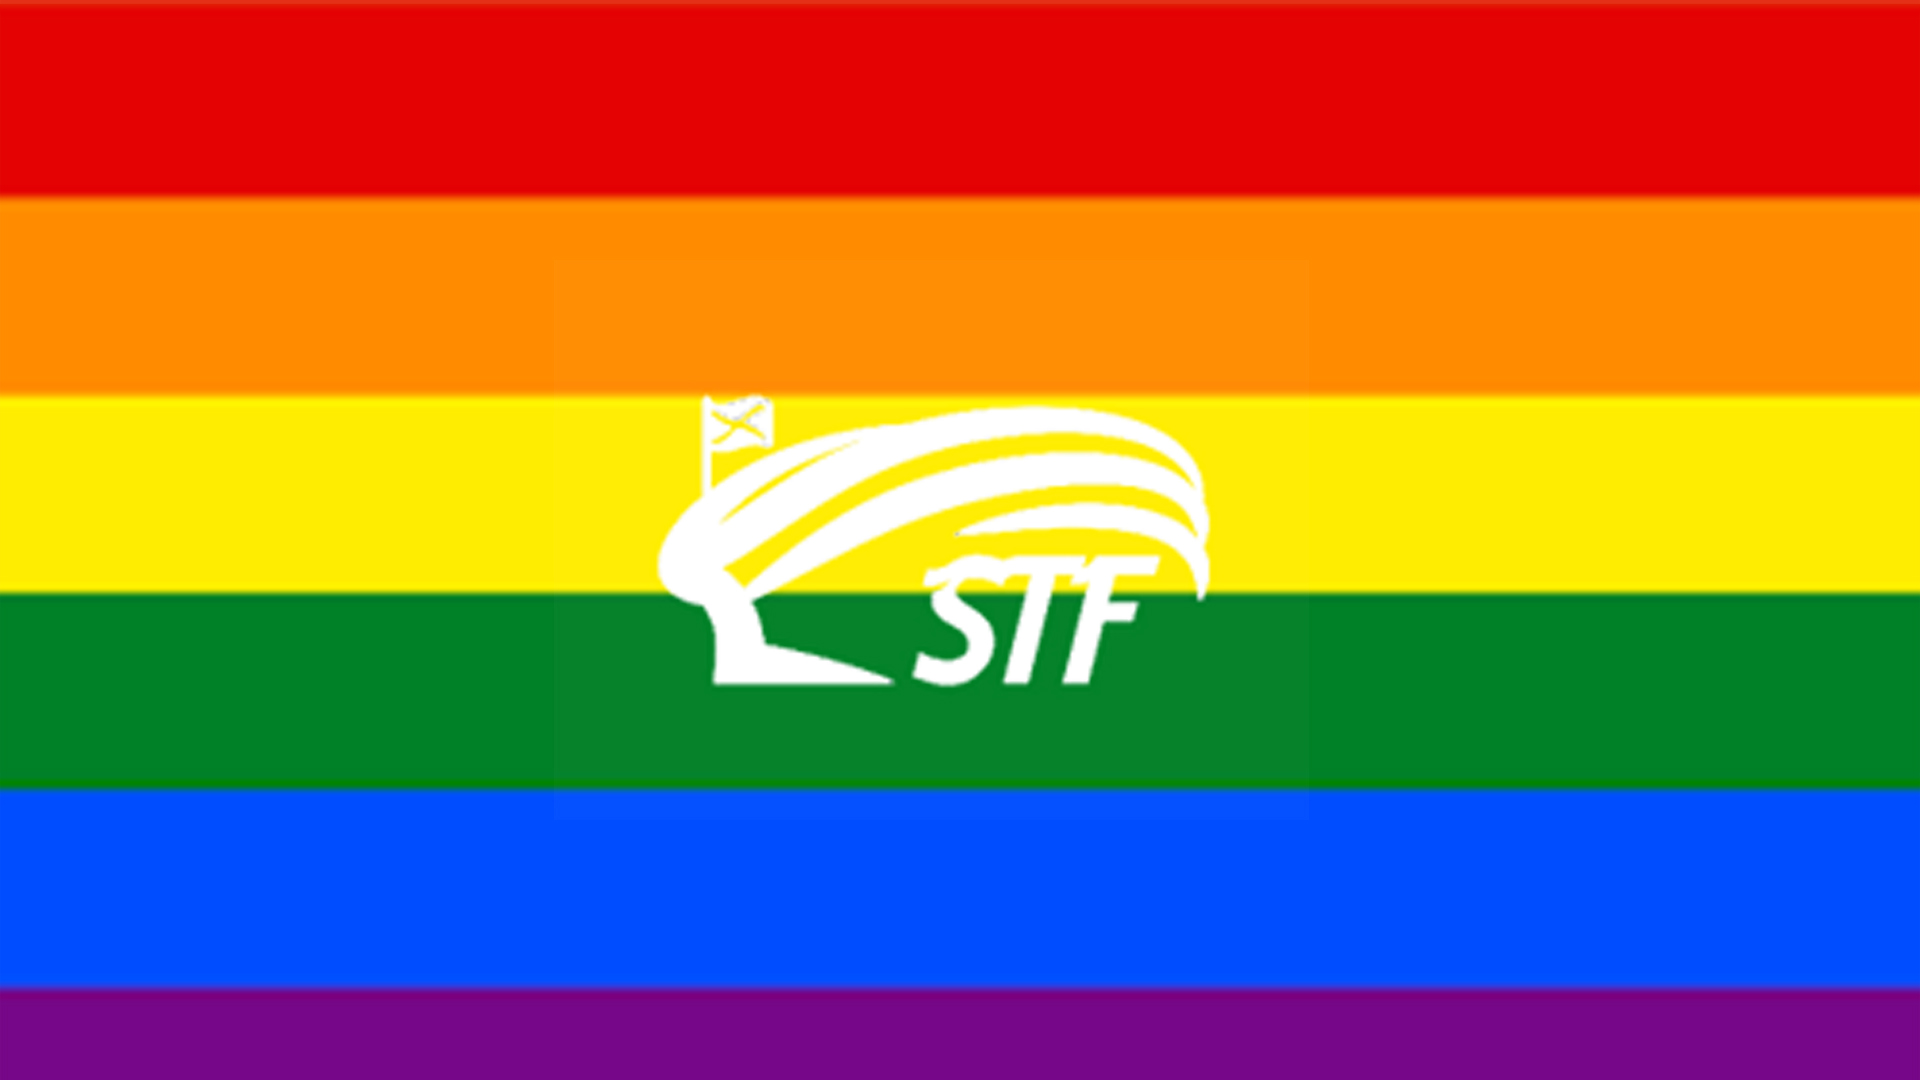 Stadium Tenerife se une a los clubes de Tenerife en su apoyo al Día Internacional contra la LGTBIfobia en el deporte